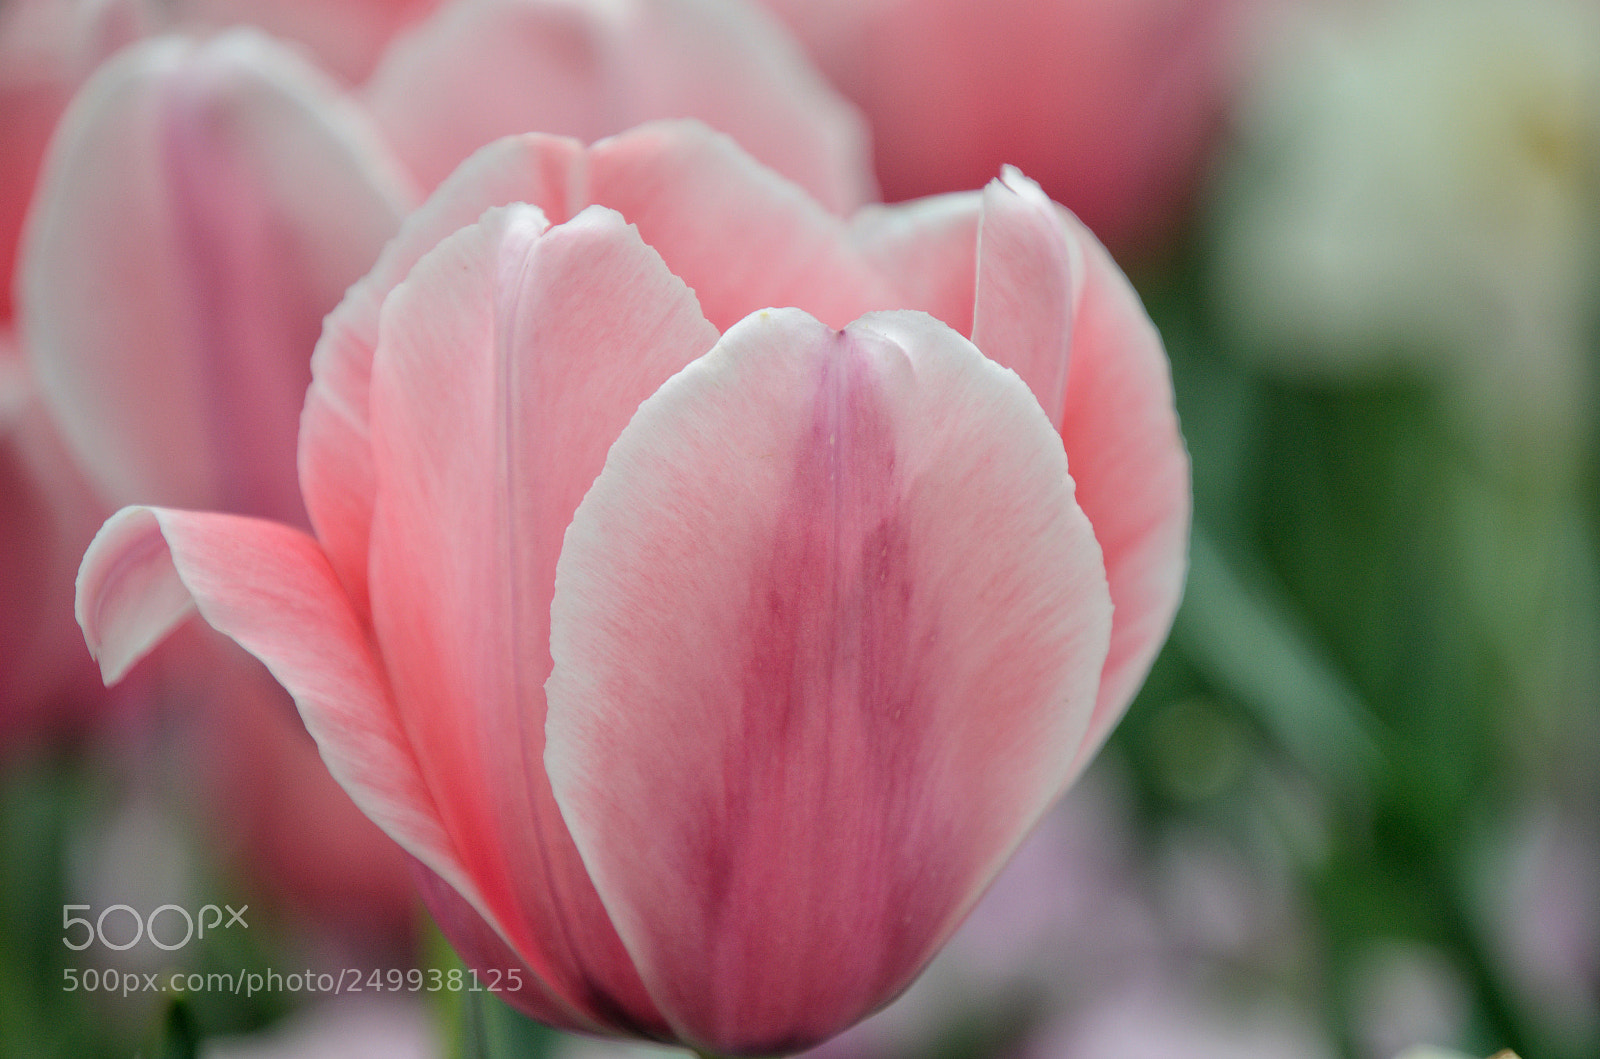 Nikon D5100 sample photo. Pink tulip photography